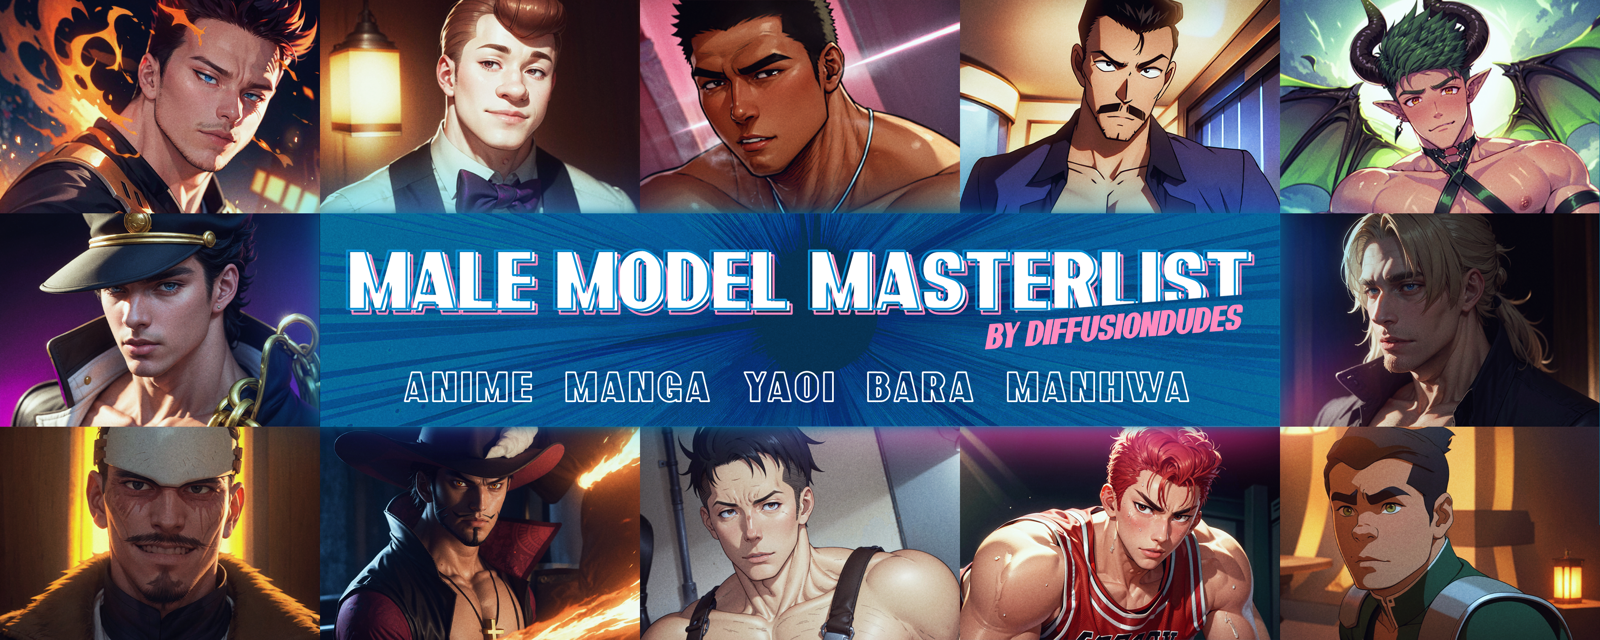 Male Model Masterlist - Anime + Manga